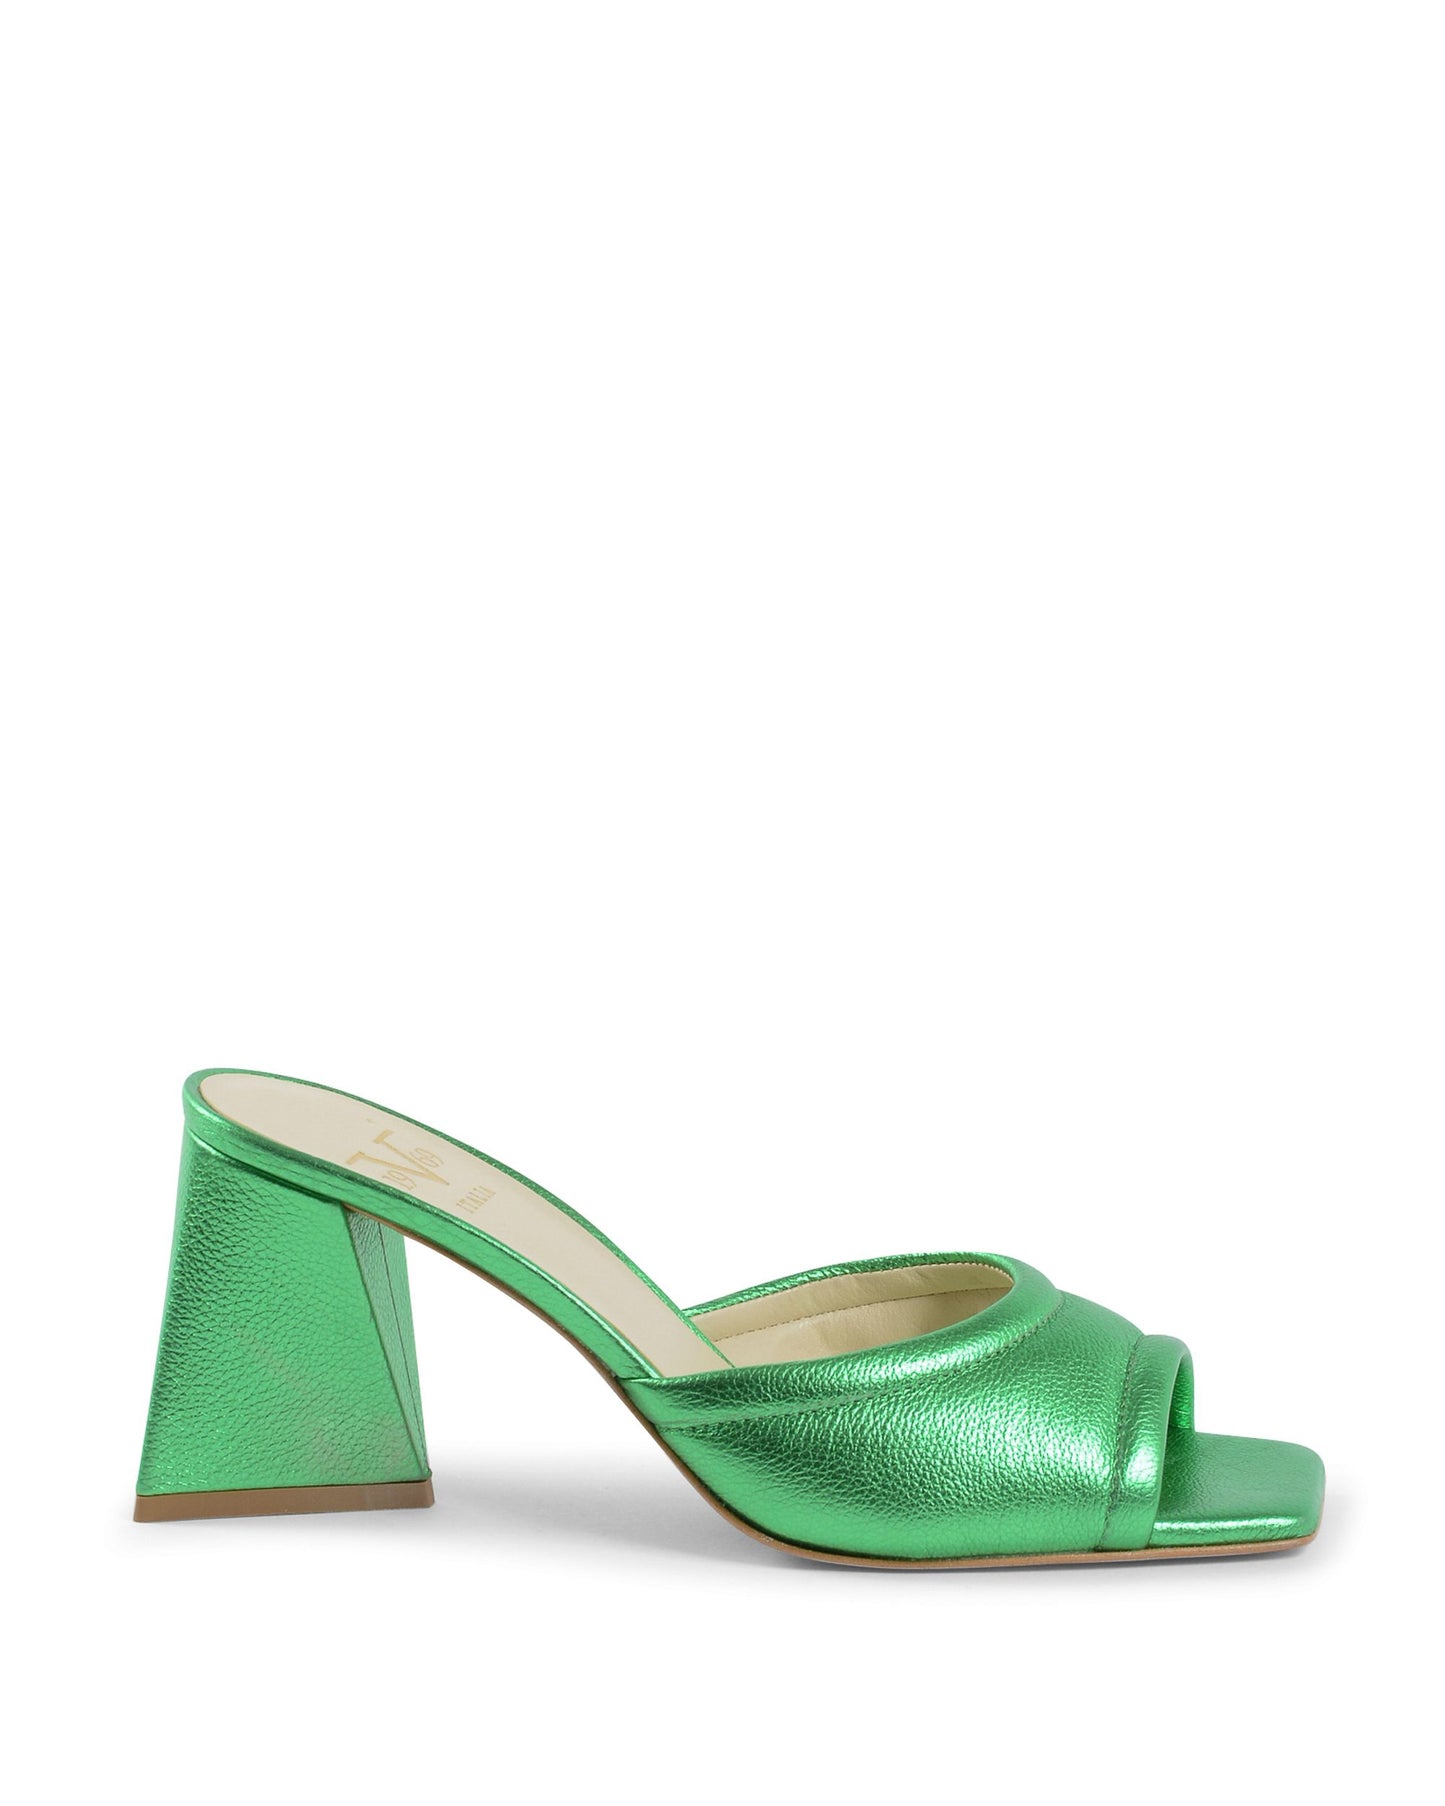 19V69 Italia Womens Sandal Green SIMONA VIT. BOT. VERDE LAME'